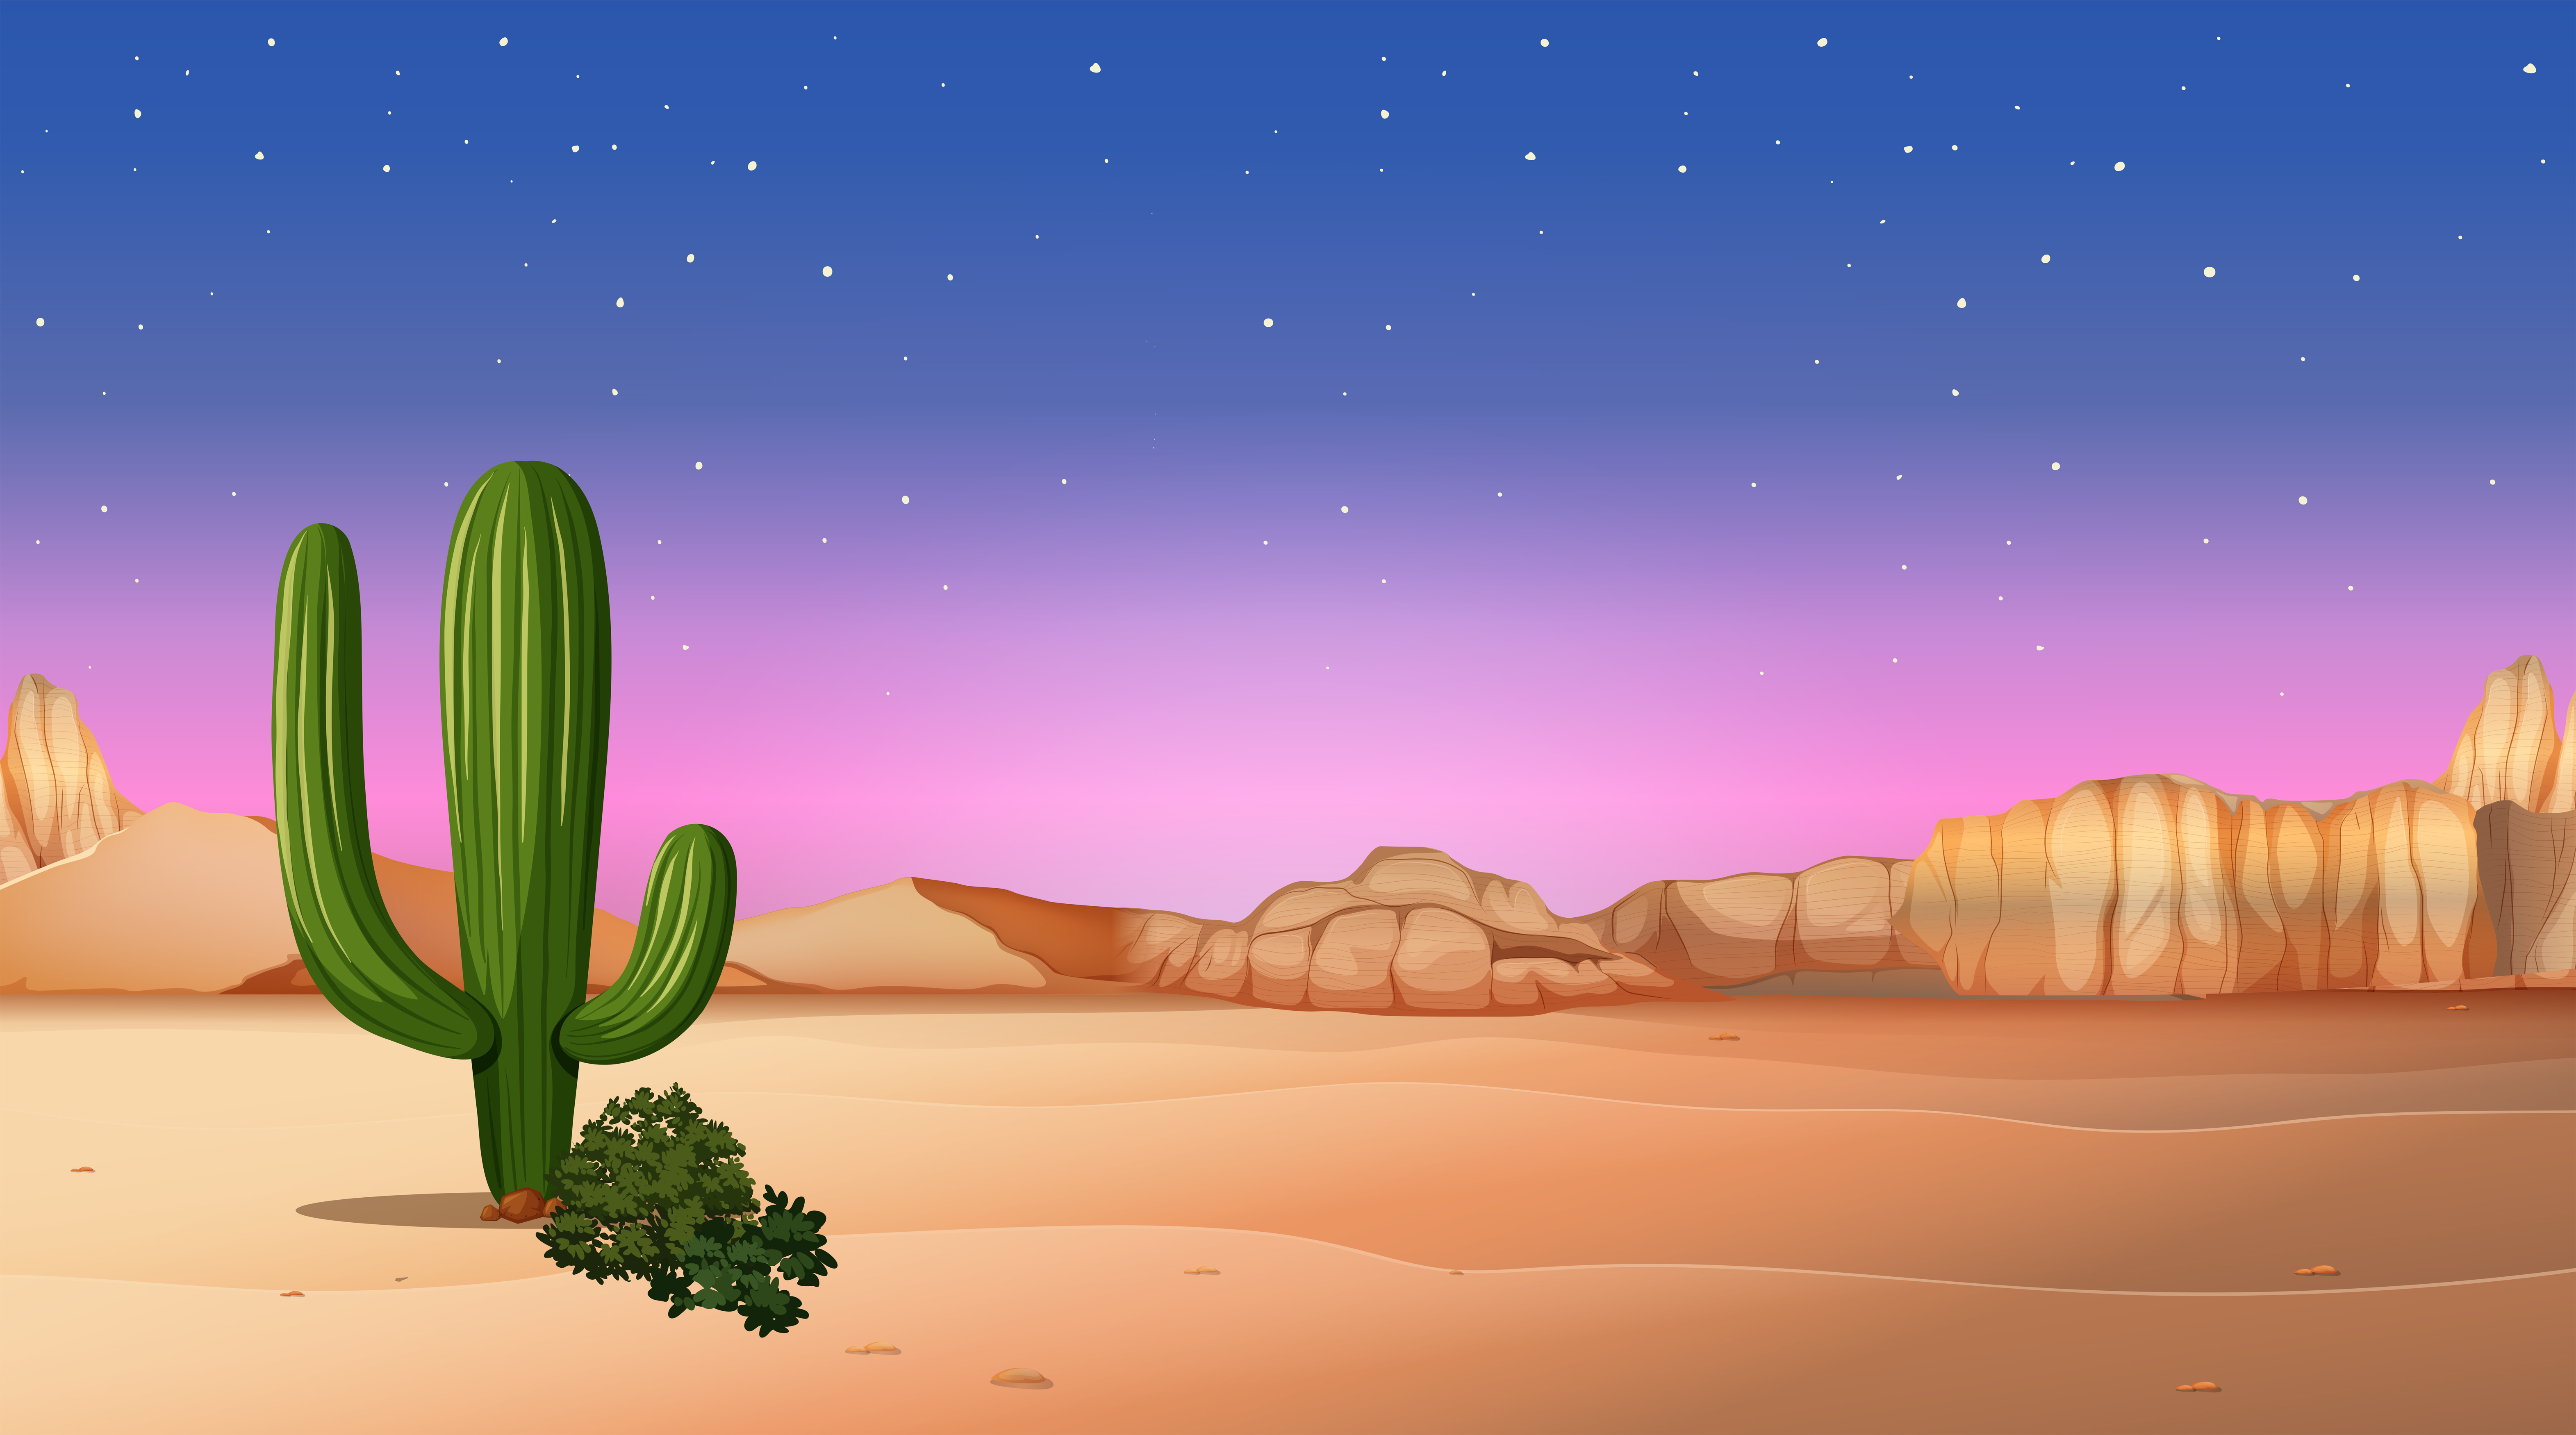 desert scene with sunset 365327 Vector Art at Vecteezy